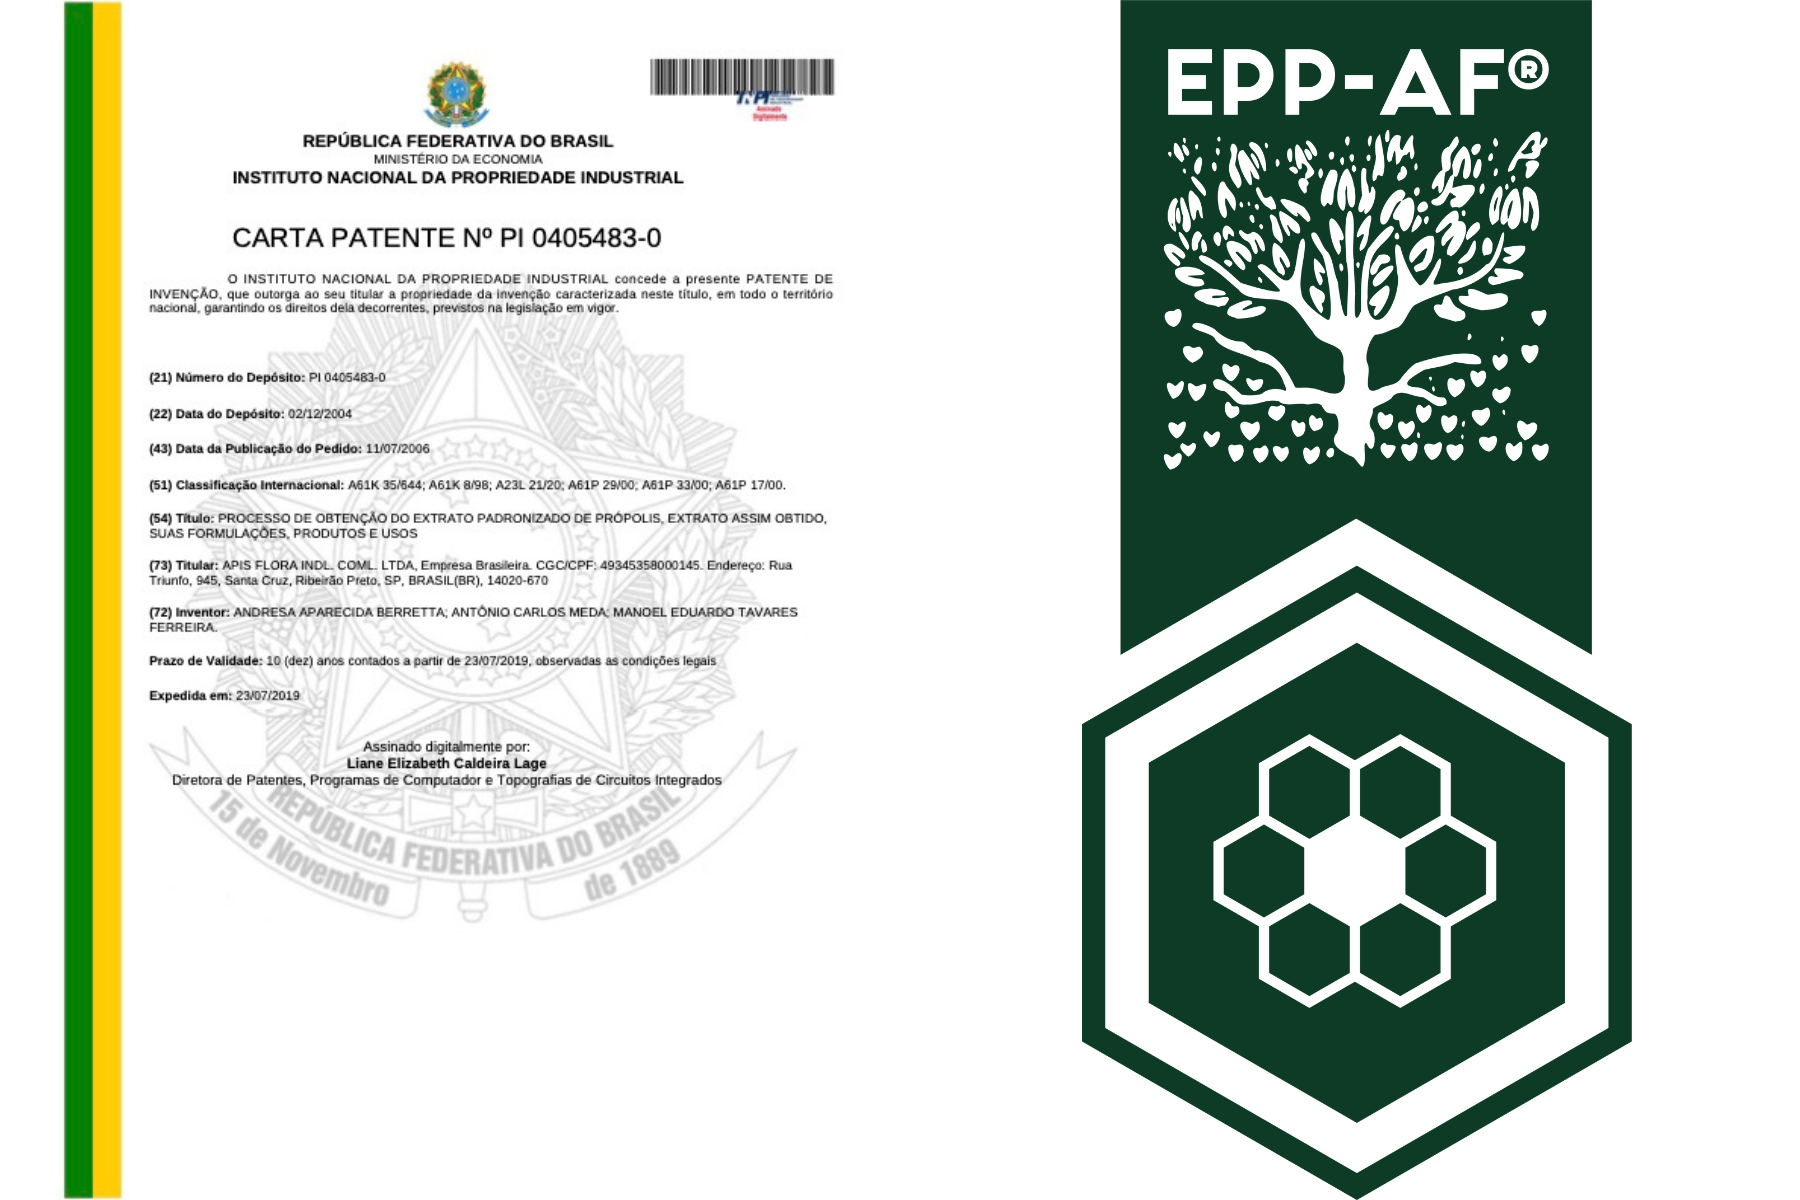 Công nghệ EPP-AF độc quyền của Apis Flora